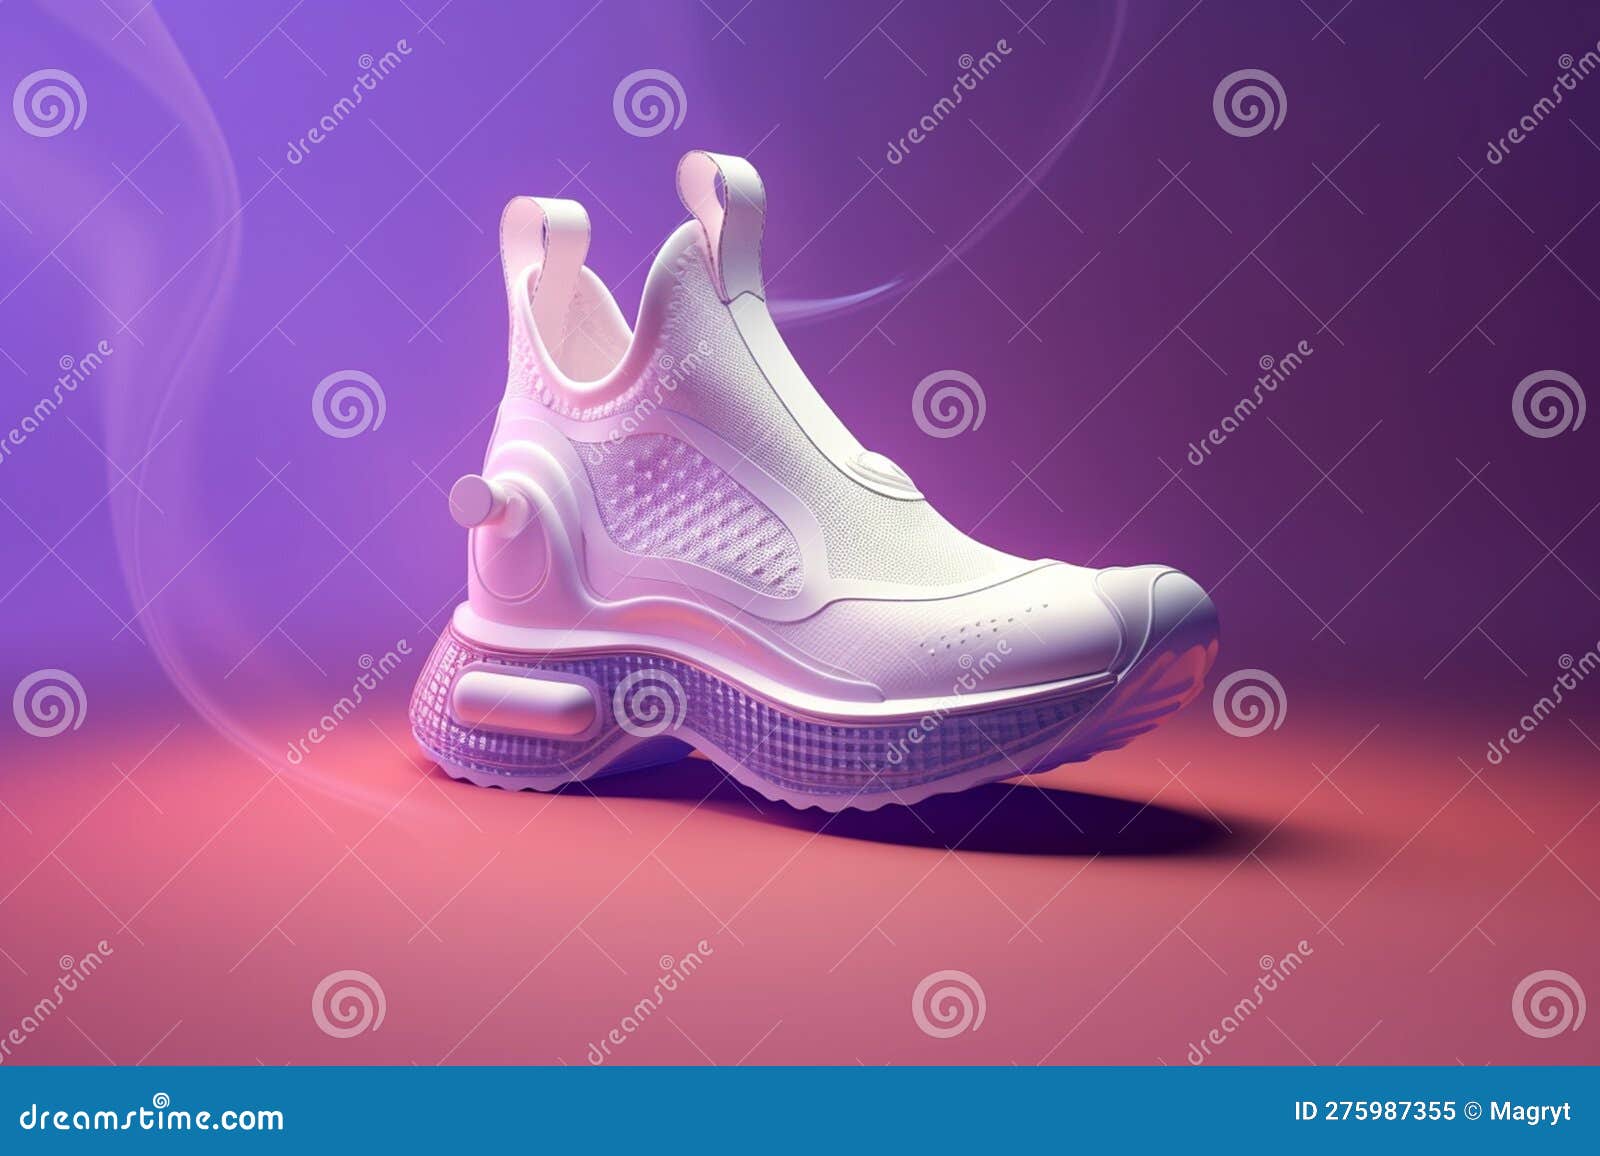 Futuristic Fashion Original Sneakers. Future Design of Stylish Sport ...